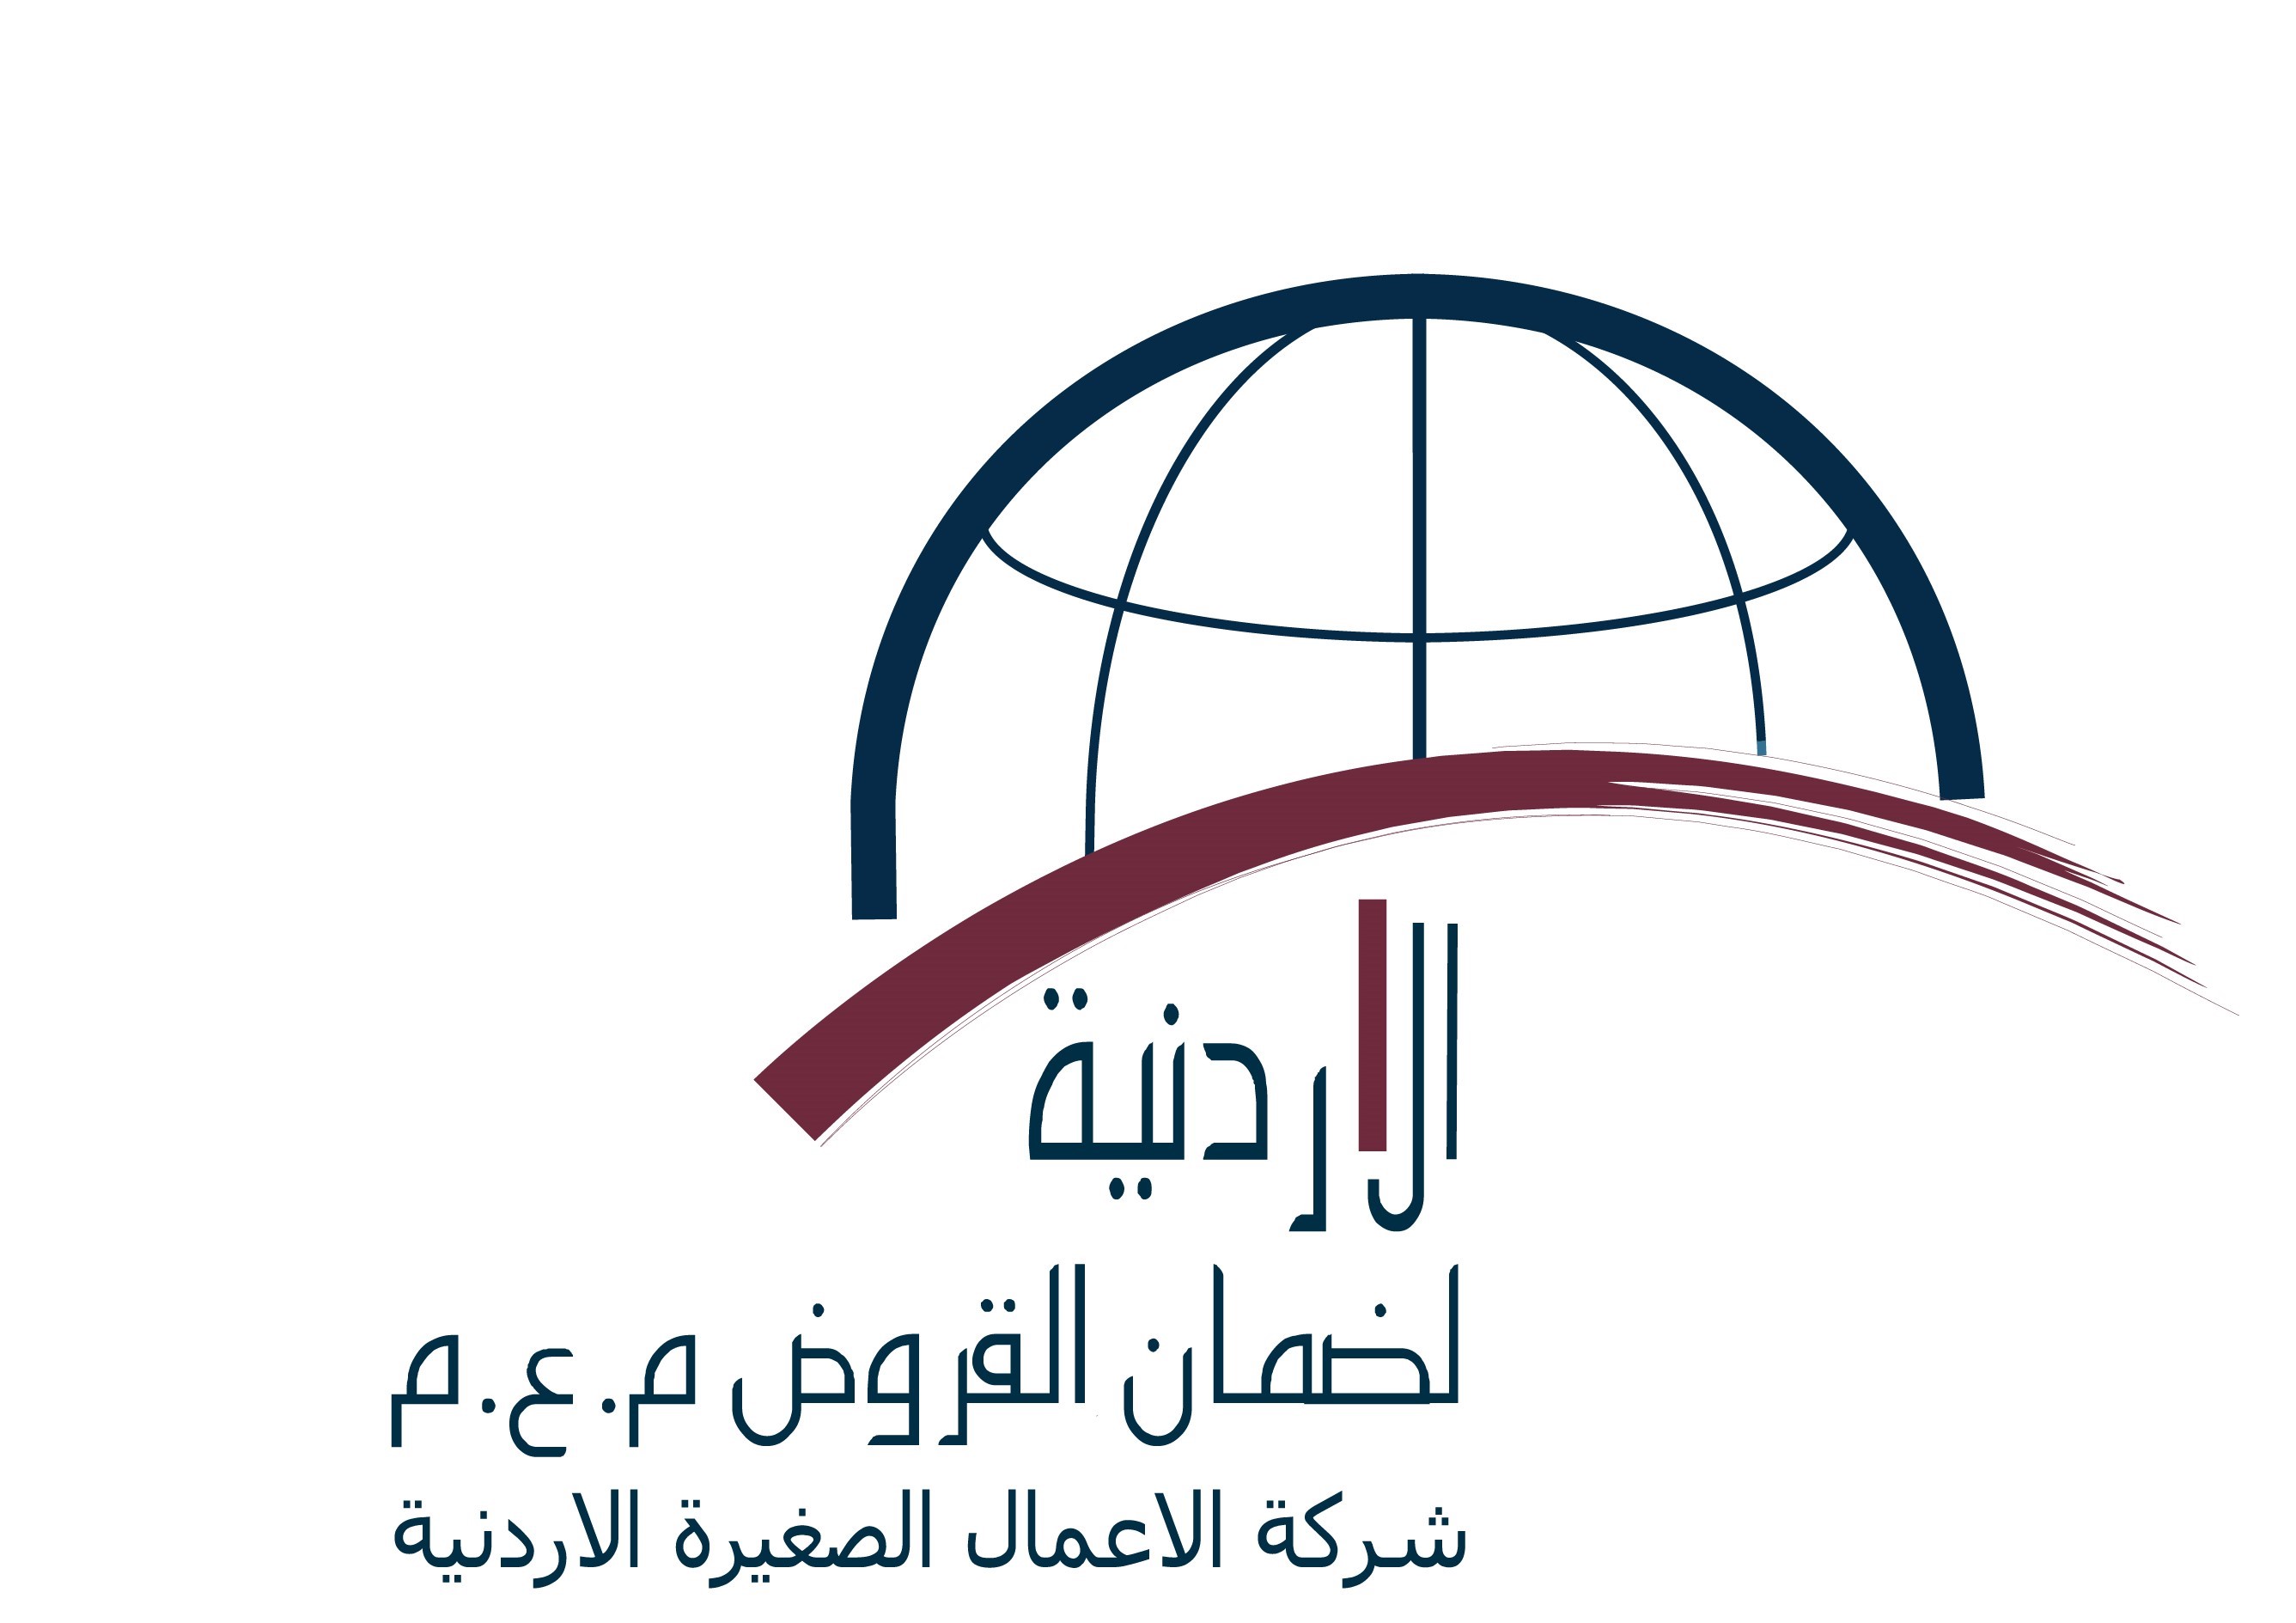 الأردنية لضمان القروض تعقد اجتماع الهيئة العامة العادي الثلاثون لمساهمي الشركة لعام 2023